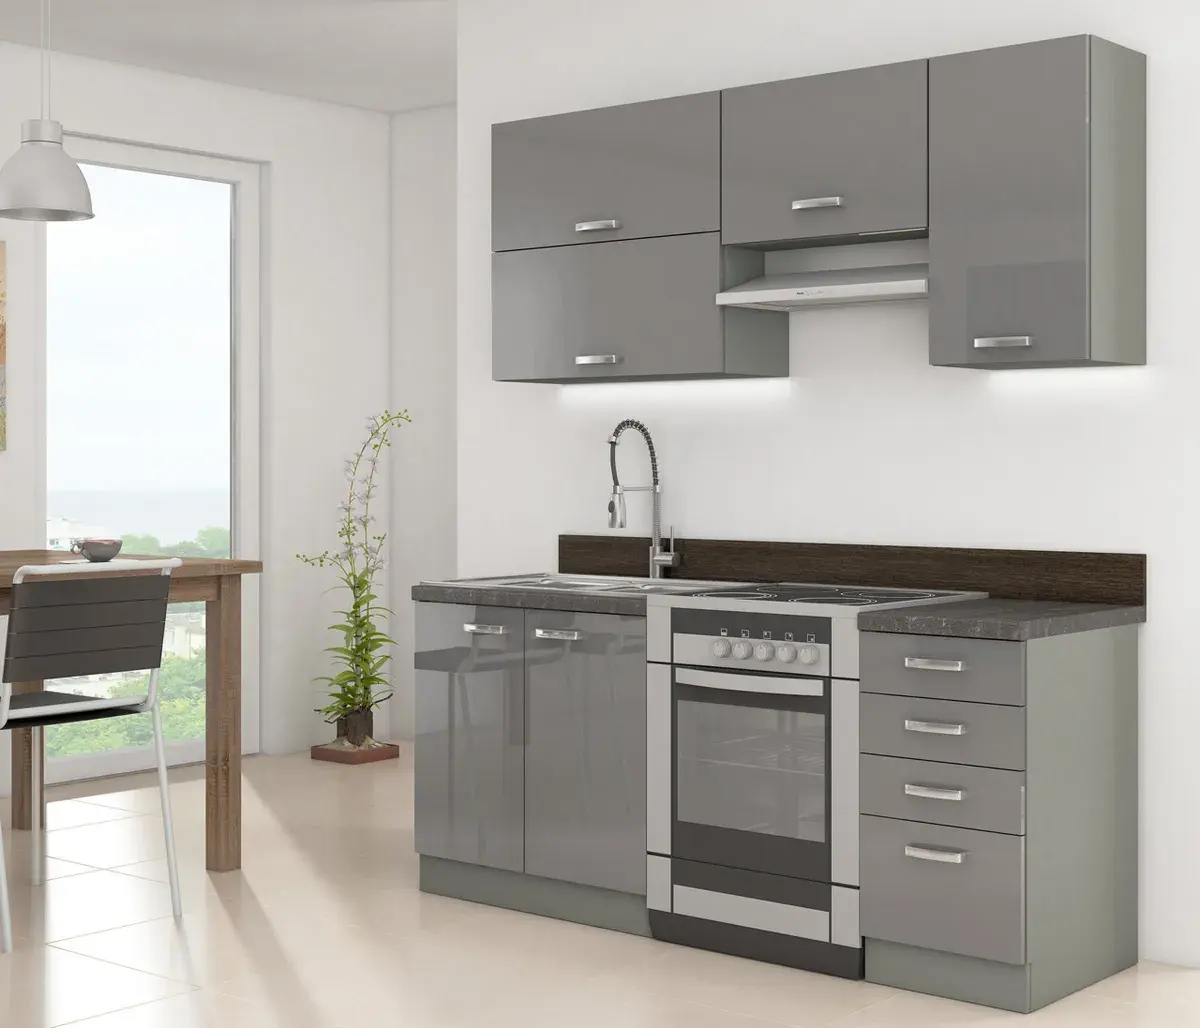 Небольшой модульный кухонный шкаф, серые настенные шкафы, 1 комплект из нержавеющей стали, нержавеющая сталь, индивидуальный цвет, промышленные рекомендации